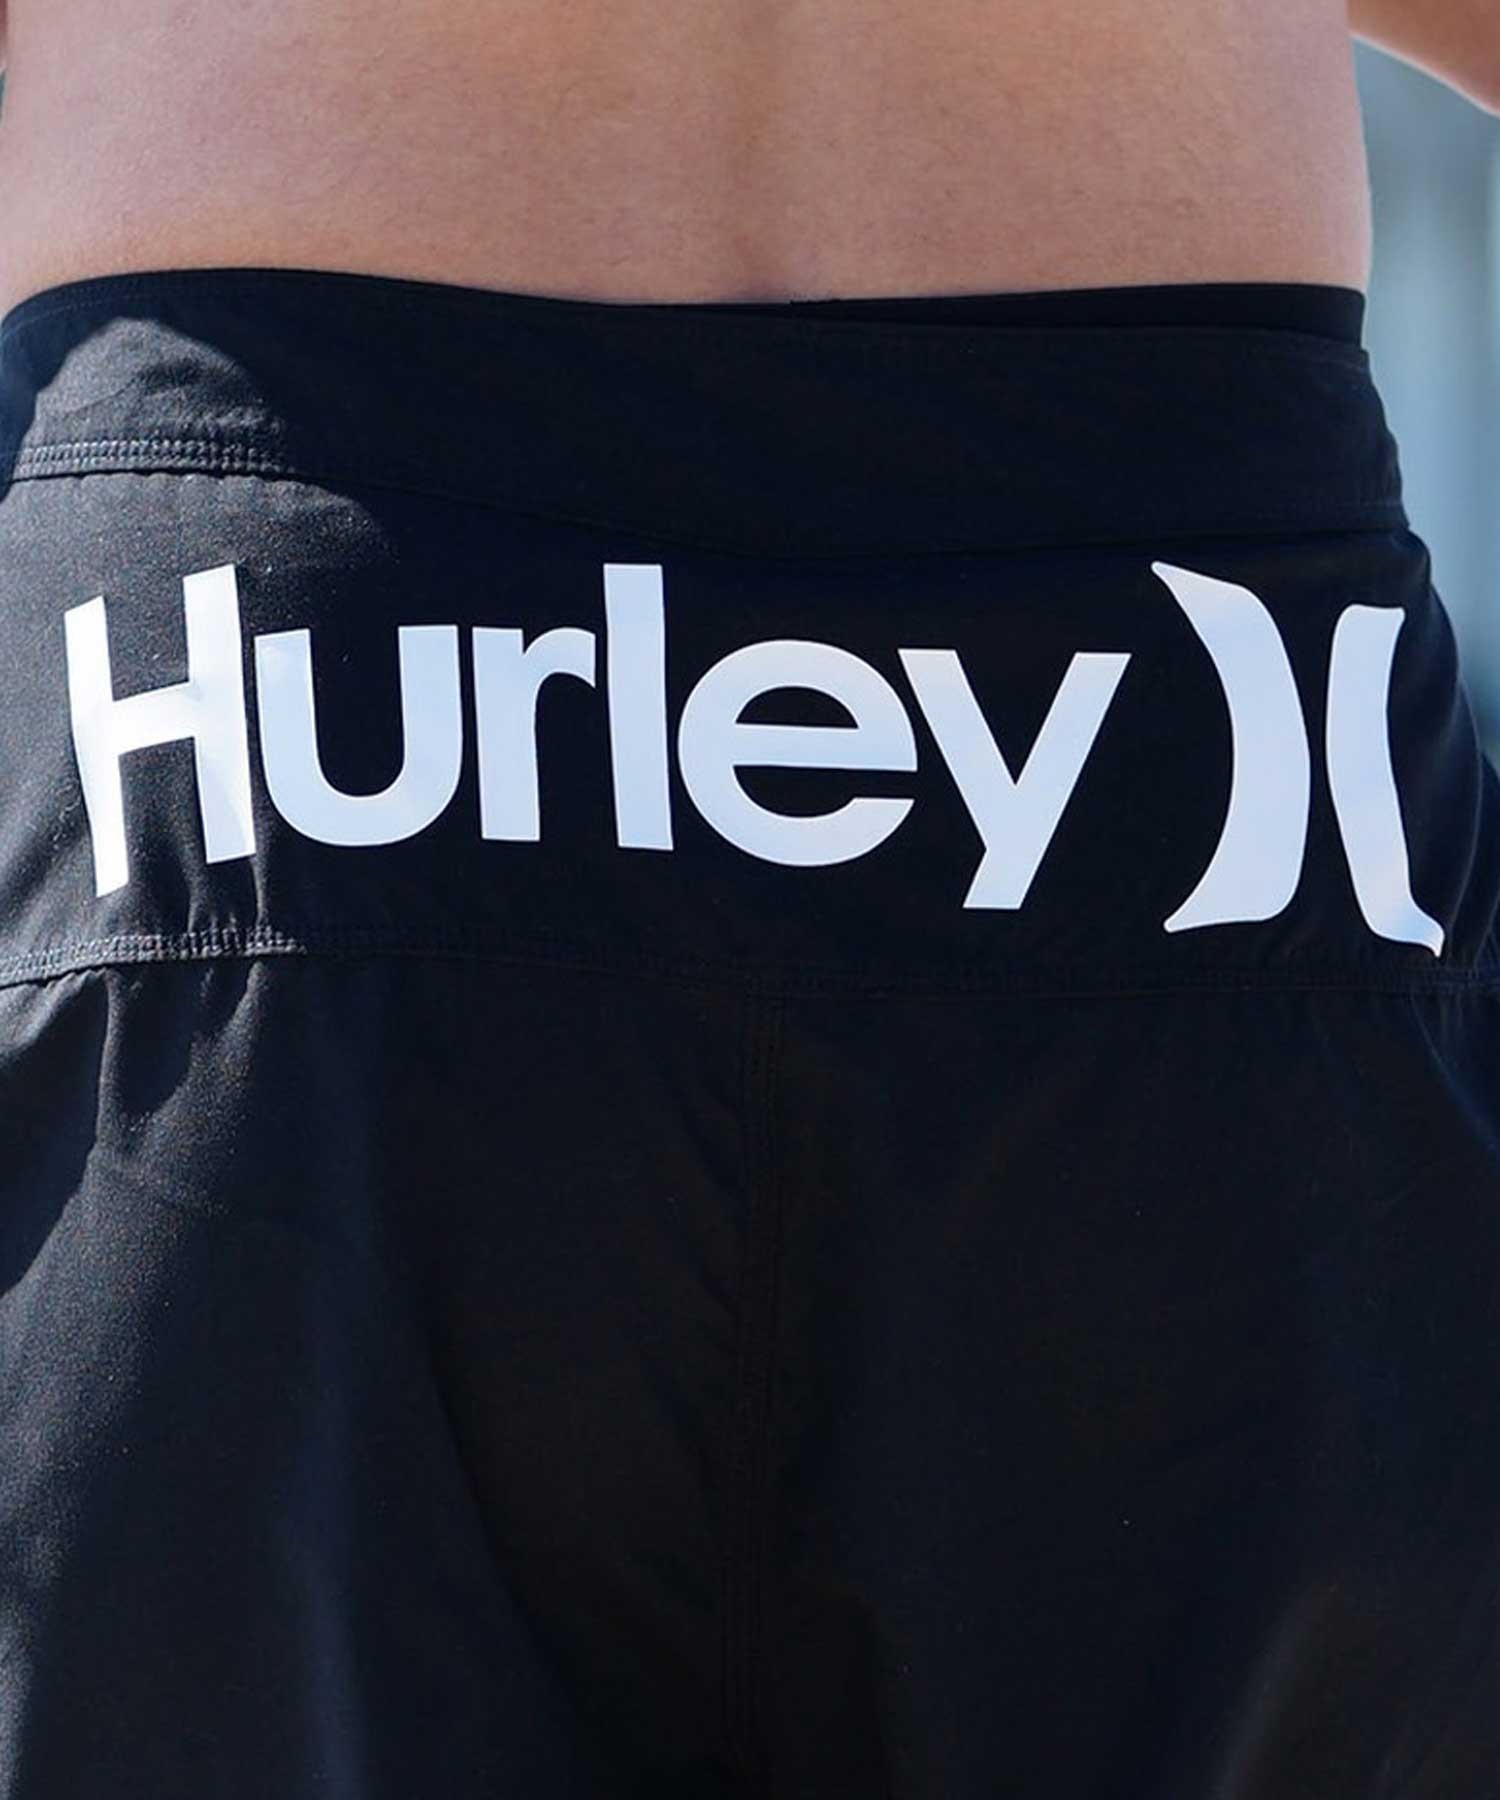 Hurley ハーレー メンズ ボードショーツ サーフトランクス 19インチ USモデル 速乾 水着 MBS0012190(H4089-28.0inch)